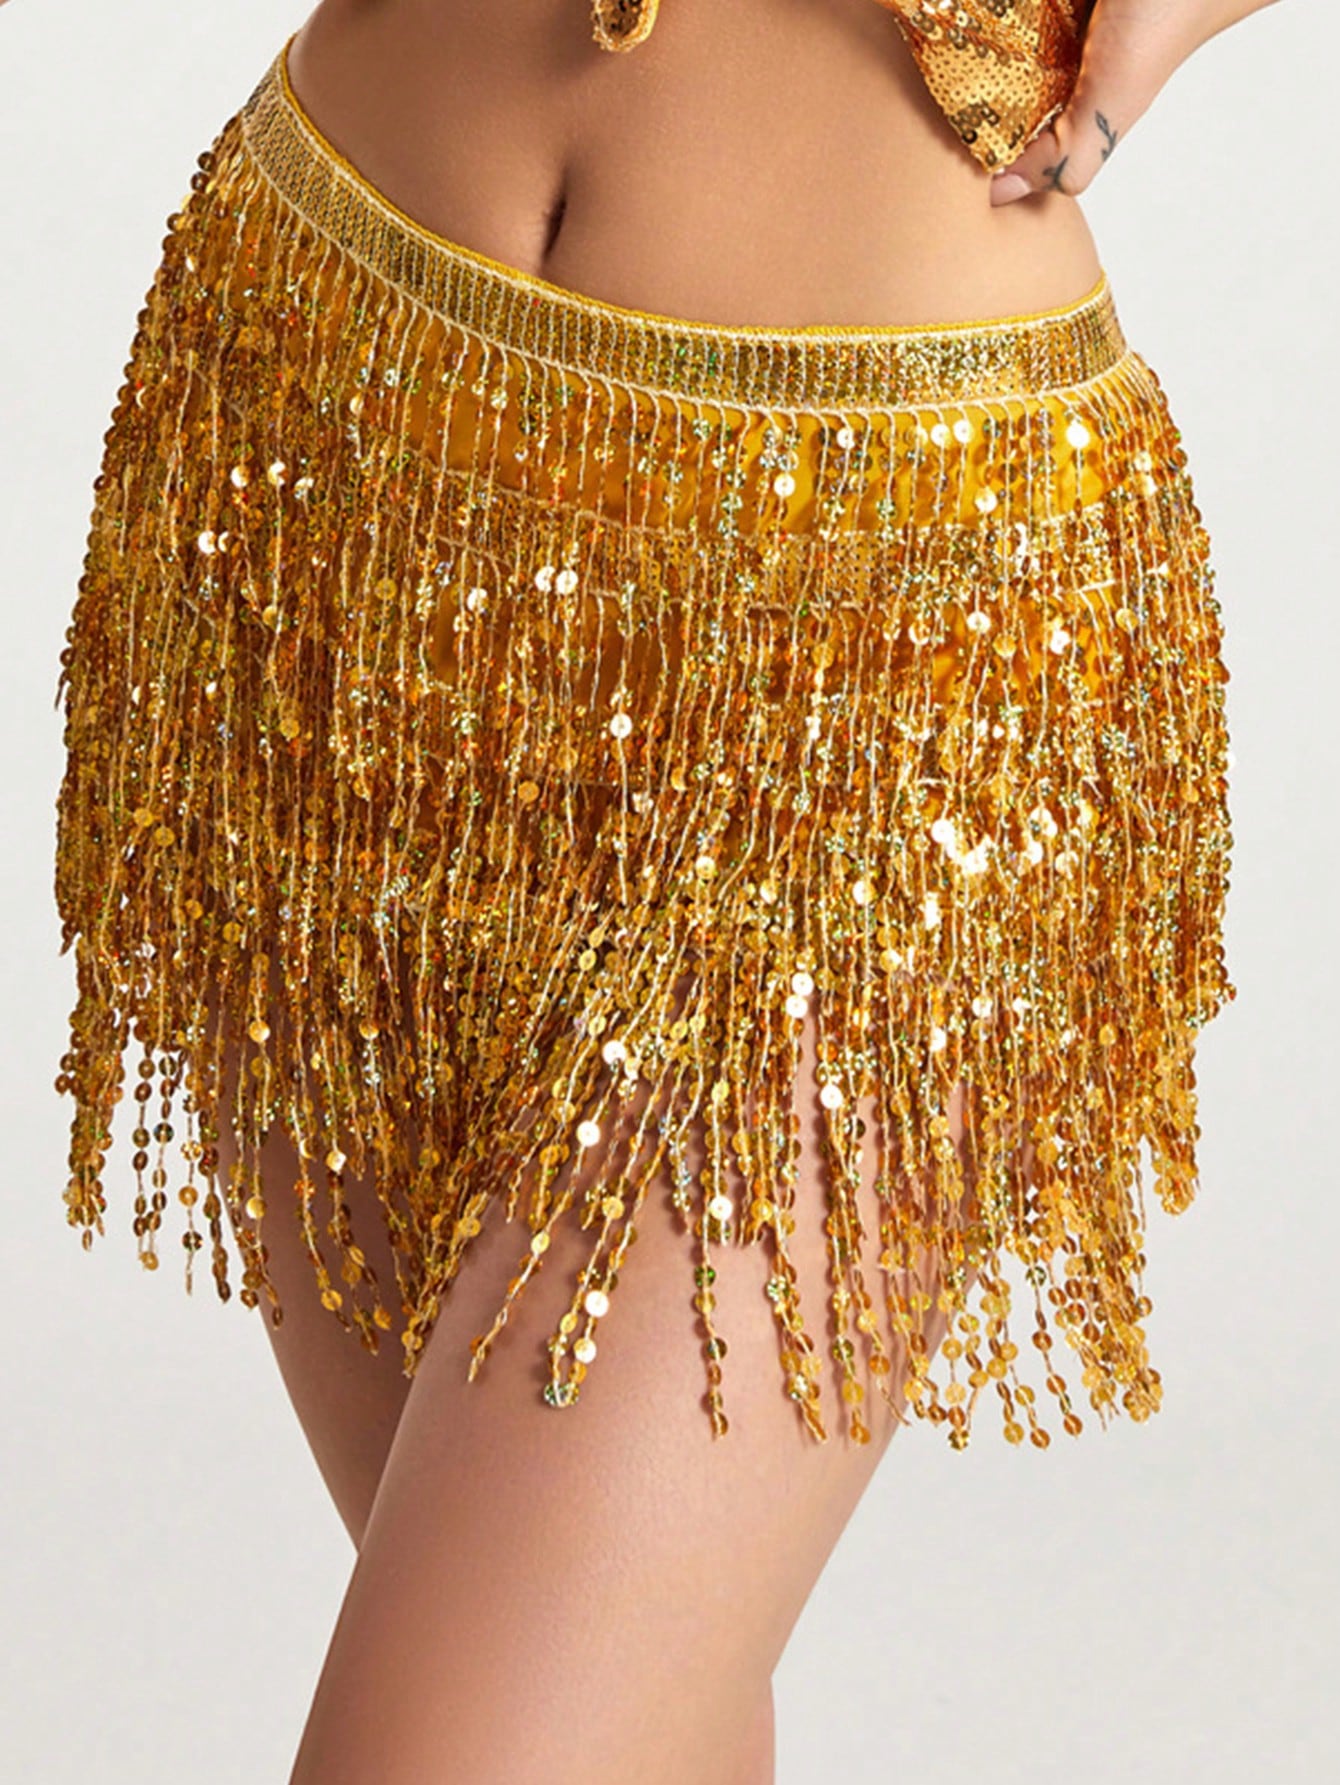 Женский костюм для танца живота, золото женский укороченный топ tiaobug с блестками и лямкой через шею для латиноамериканского танца живота